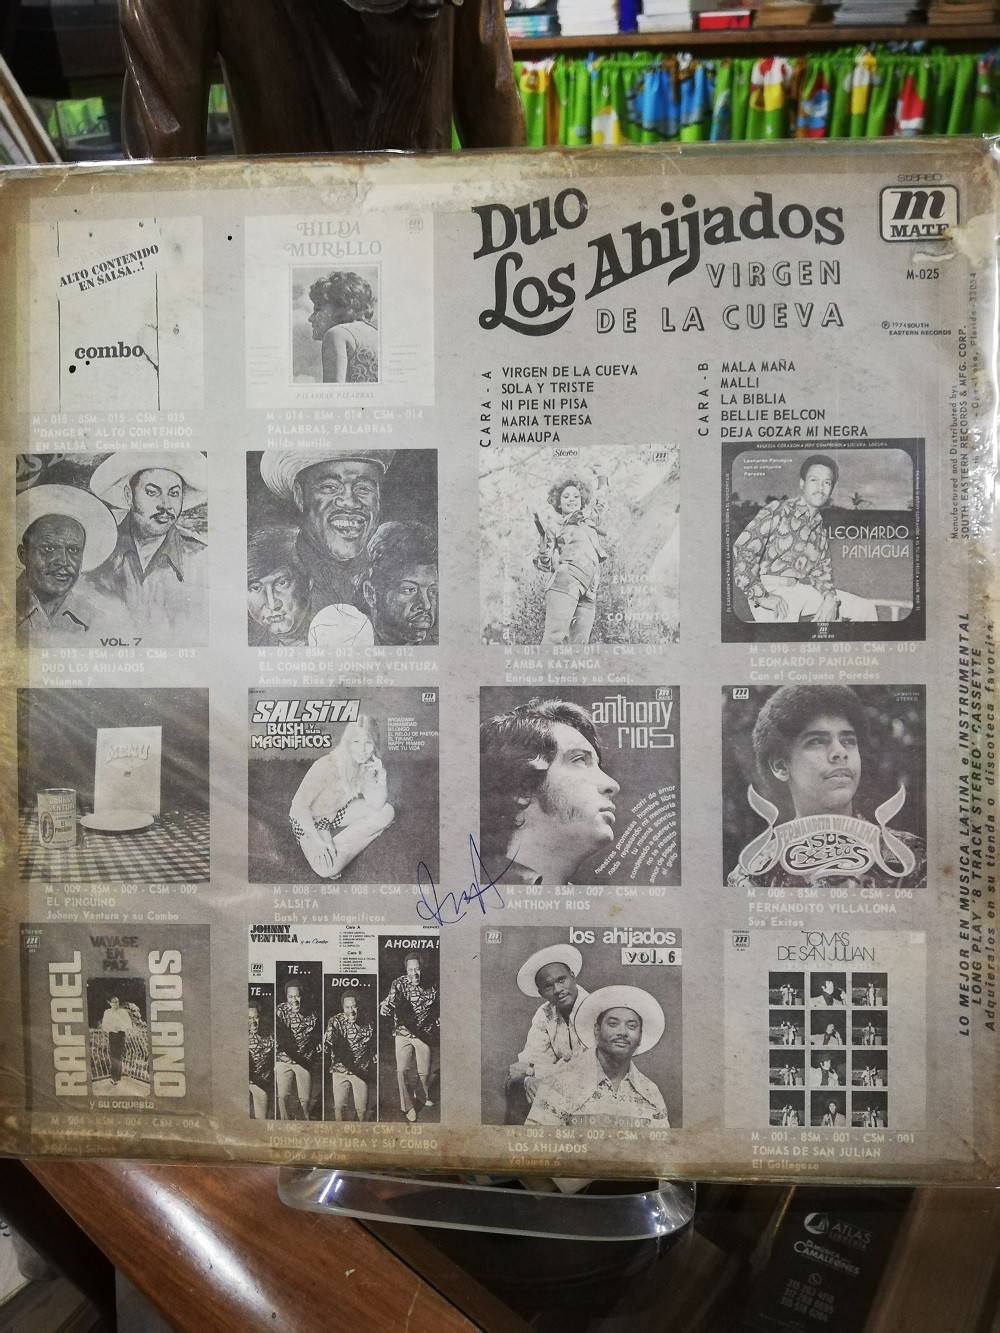 Imagen LP DUO LOS AHIJADOS - VIRGEN DE LA CUEVA 2